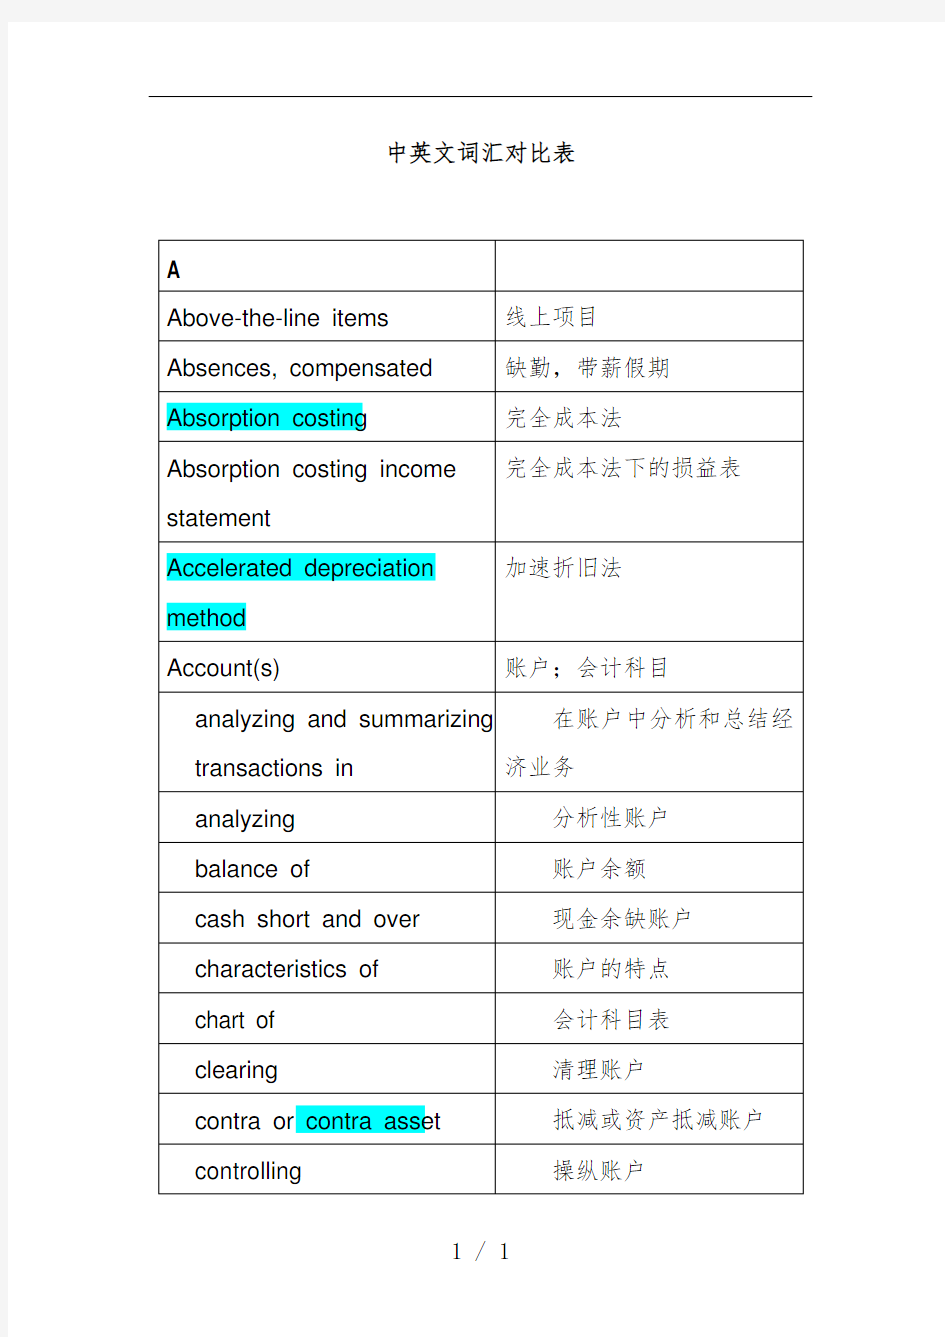 中英文会计词汇对照表